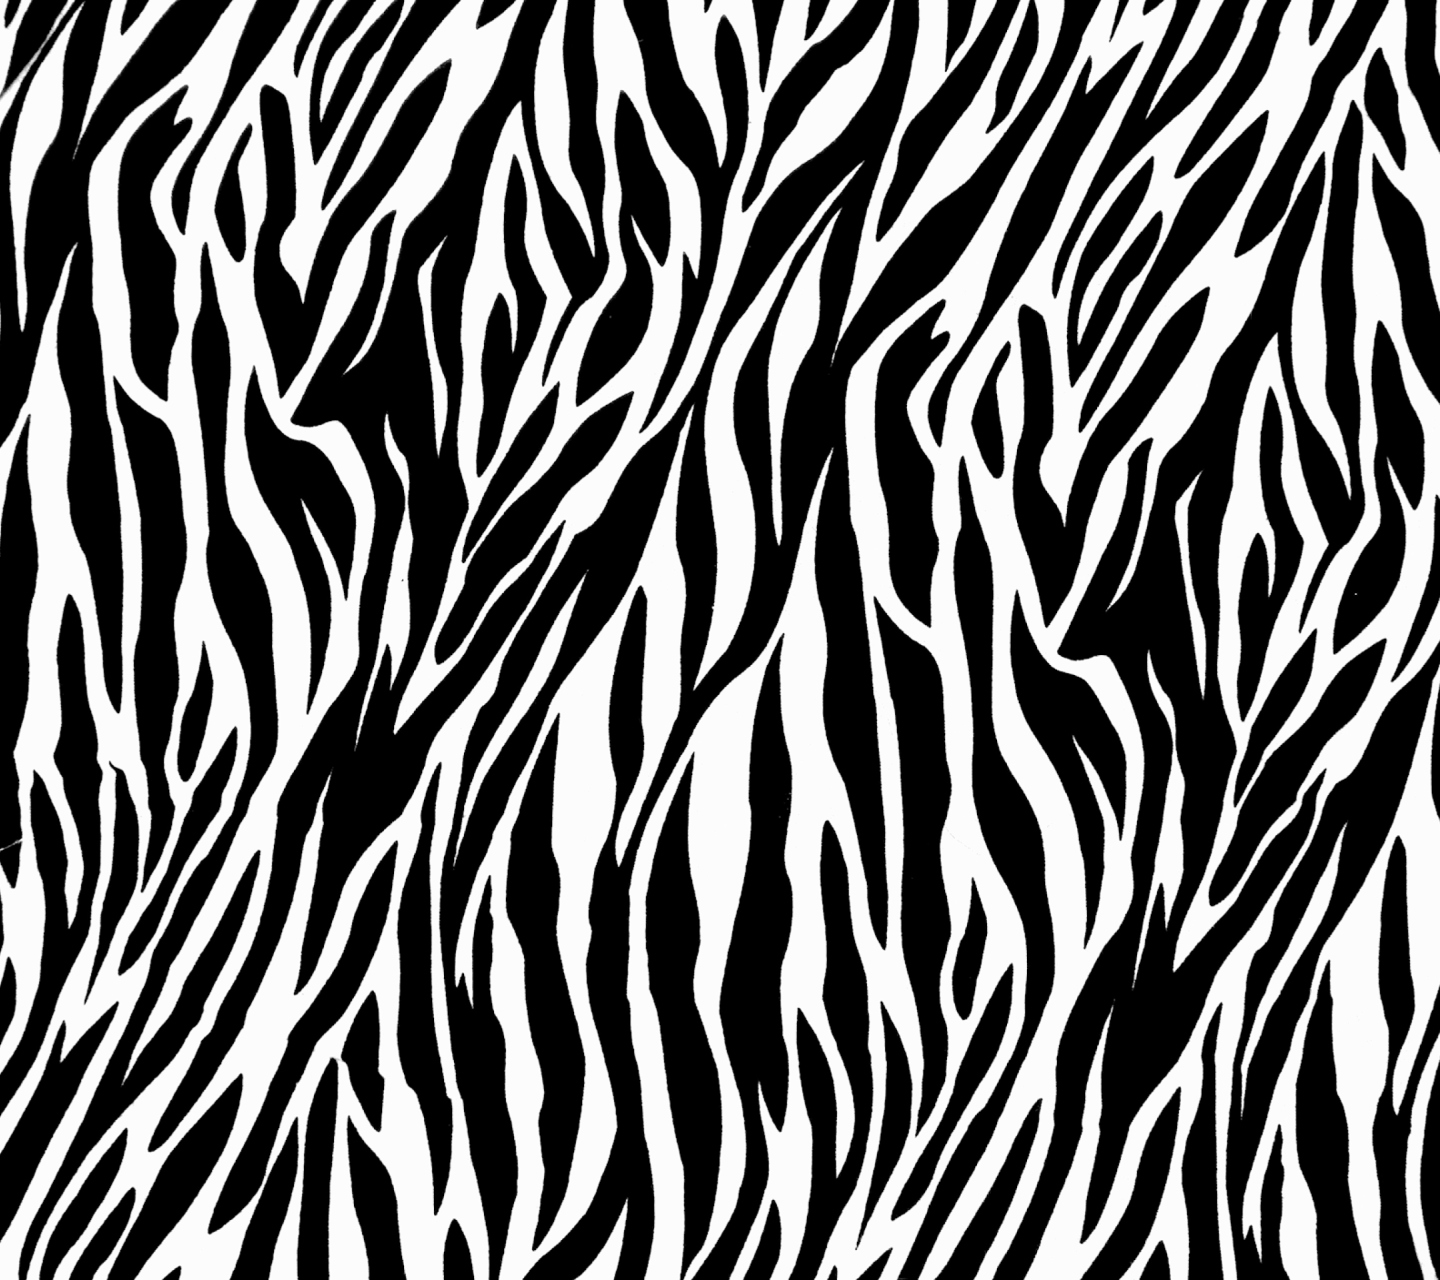 Zebra Print screenshot #1 1440x1280